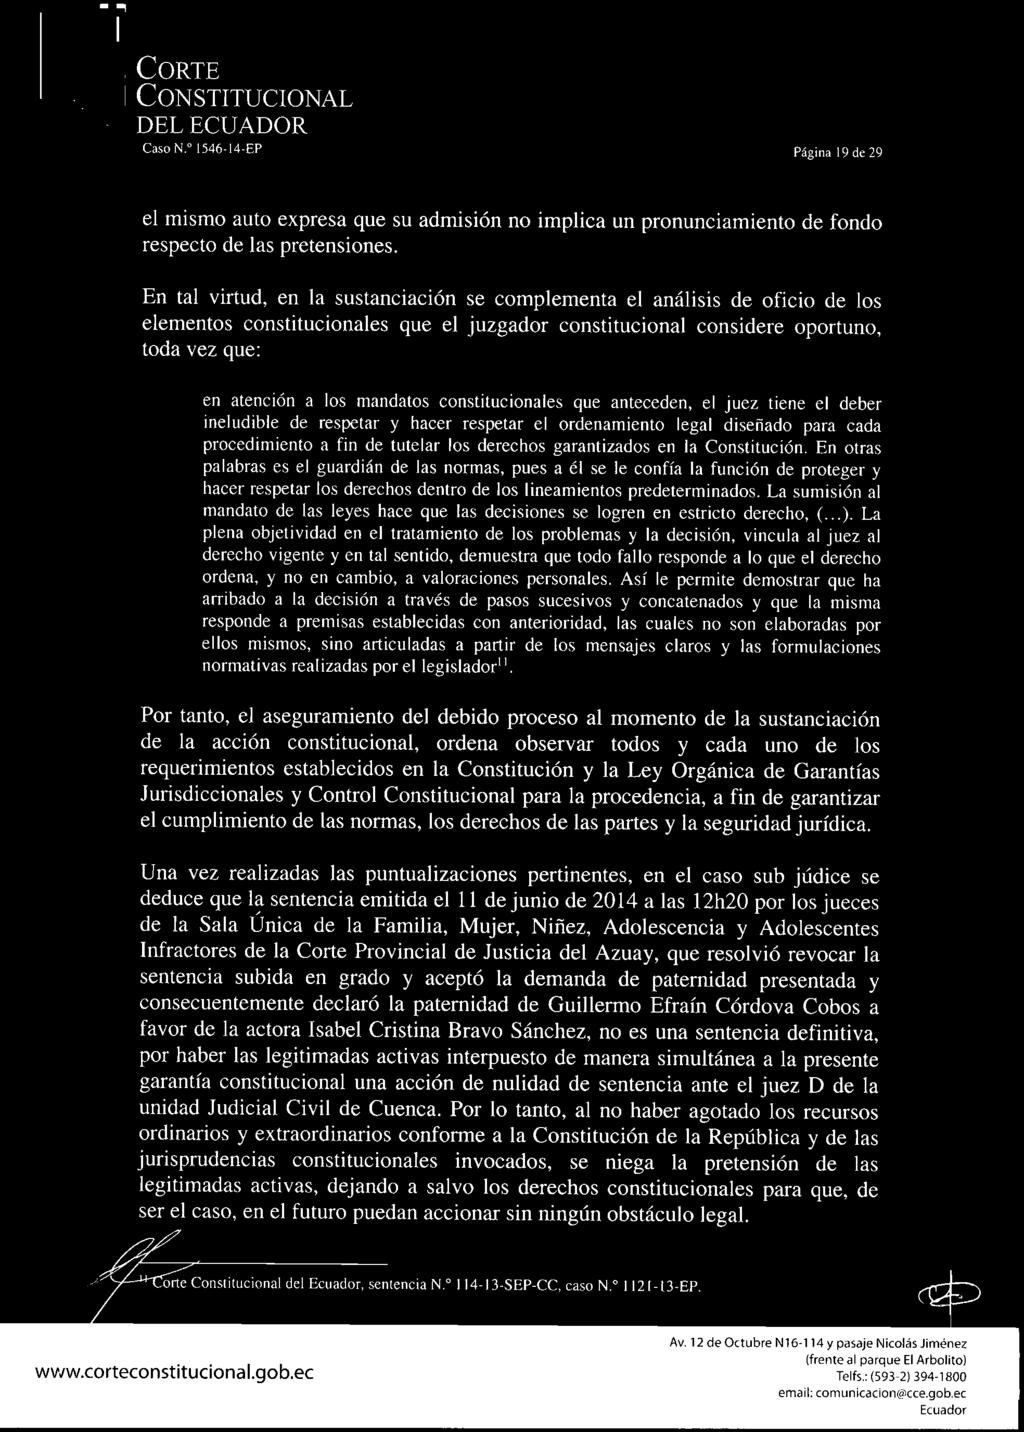 Corte del ecuador CasoN. 1546-14-EP Página 19 de 29 el mismo auto expresa que su admisión no implica un pronunciamiento de fondo respecto de las pretensiones.